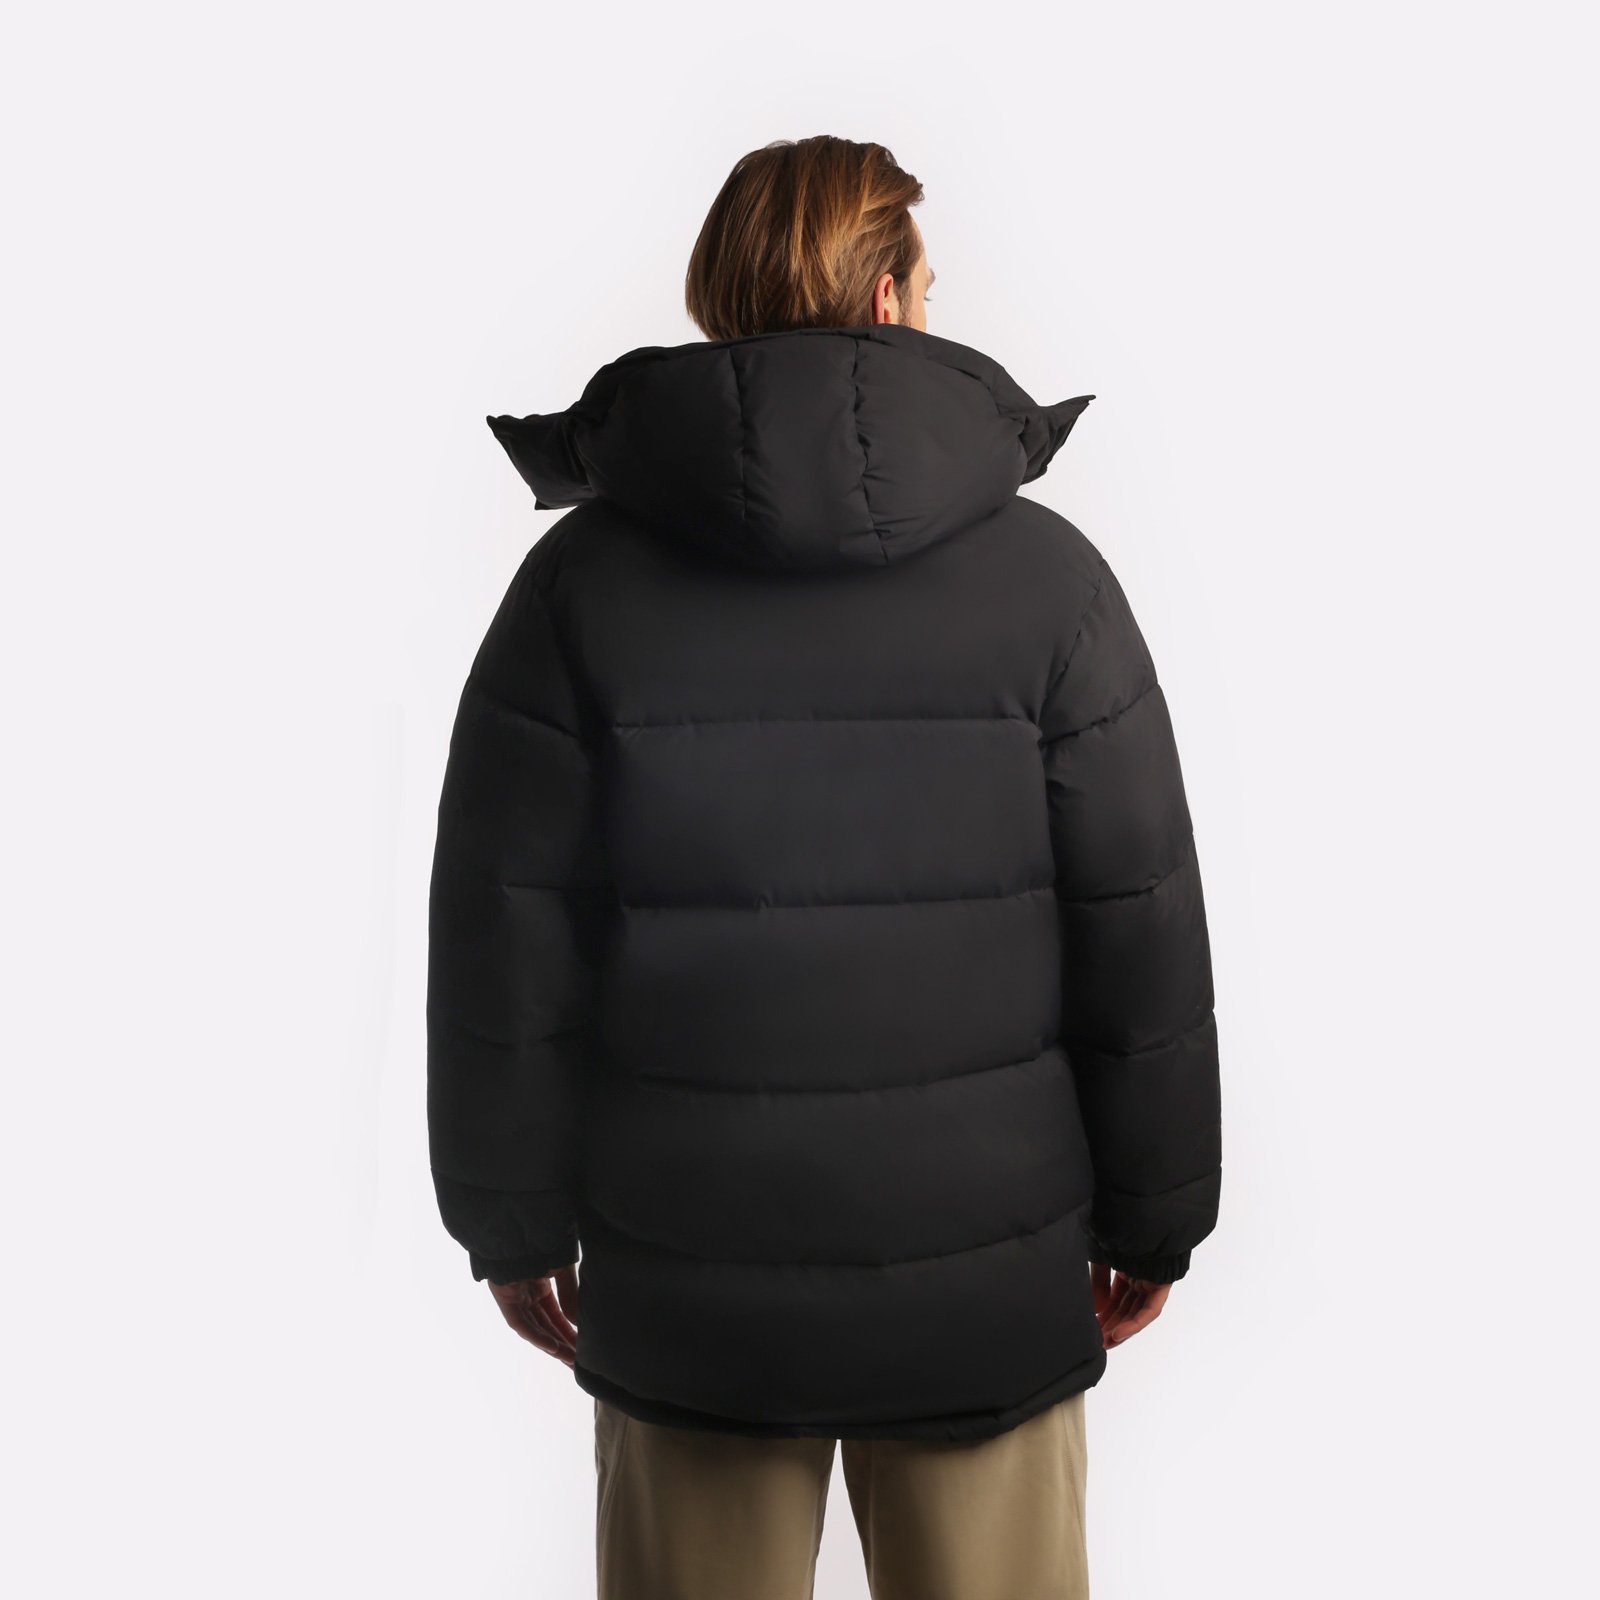 мужская куртка Carhartt WIP Milter Jacket  (I032267-black) I032267-black - цена, описание, фото 4